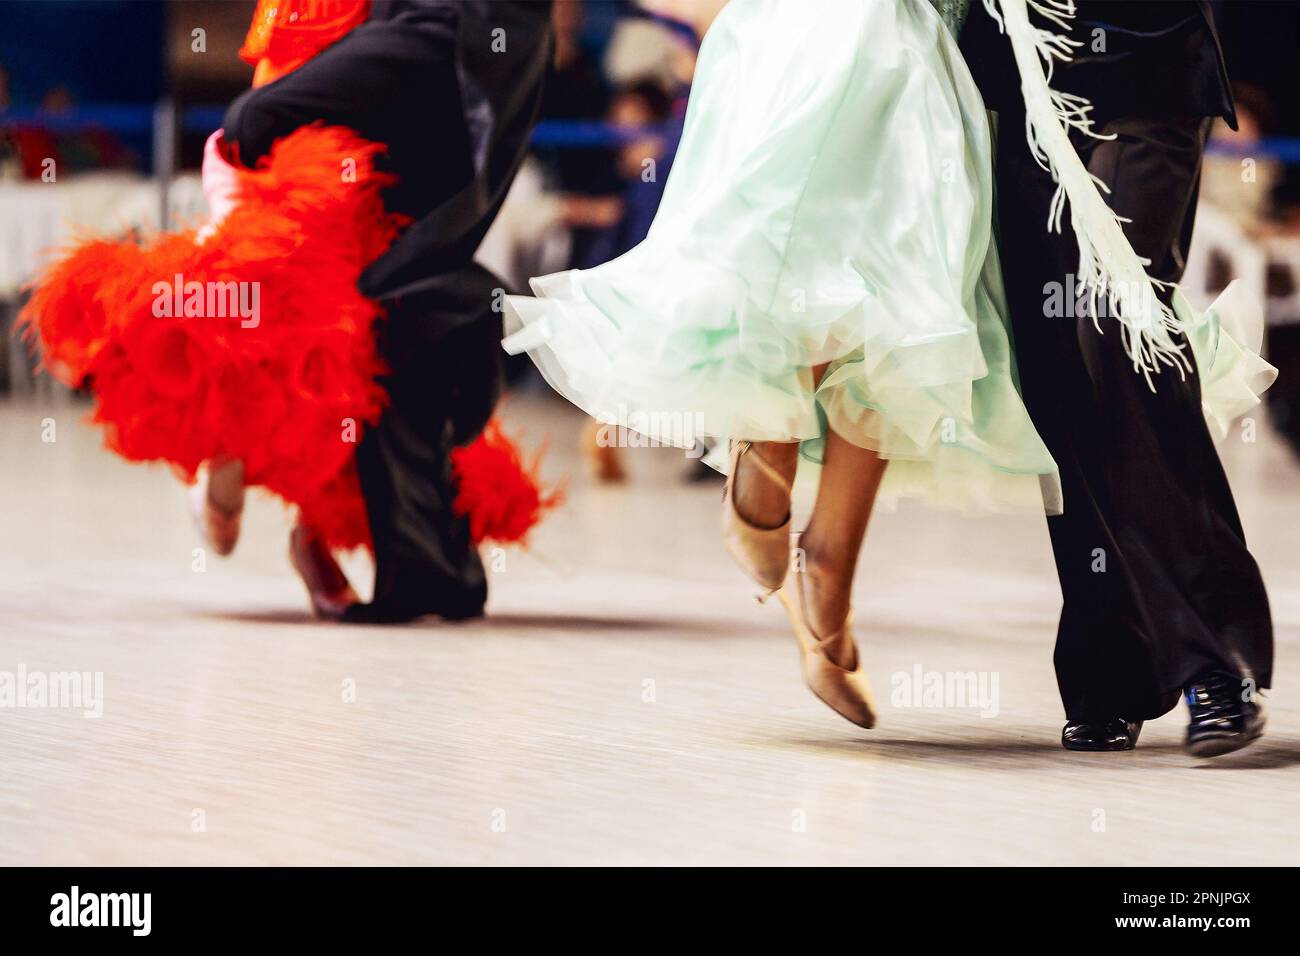 couples dansant la valse viennoise dans une salle de bal de compétition dancesport, femme porte la robe pourpre et rouge, homme sur la queue noire costume Banque D'Images